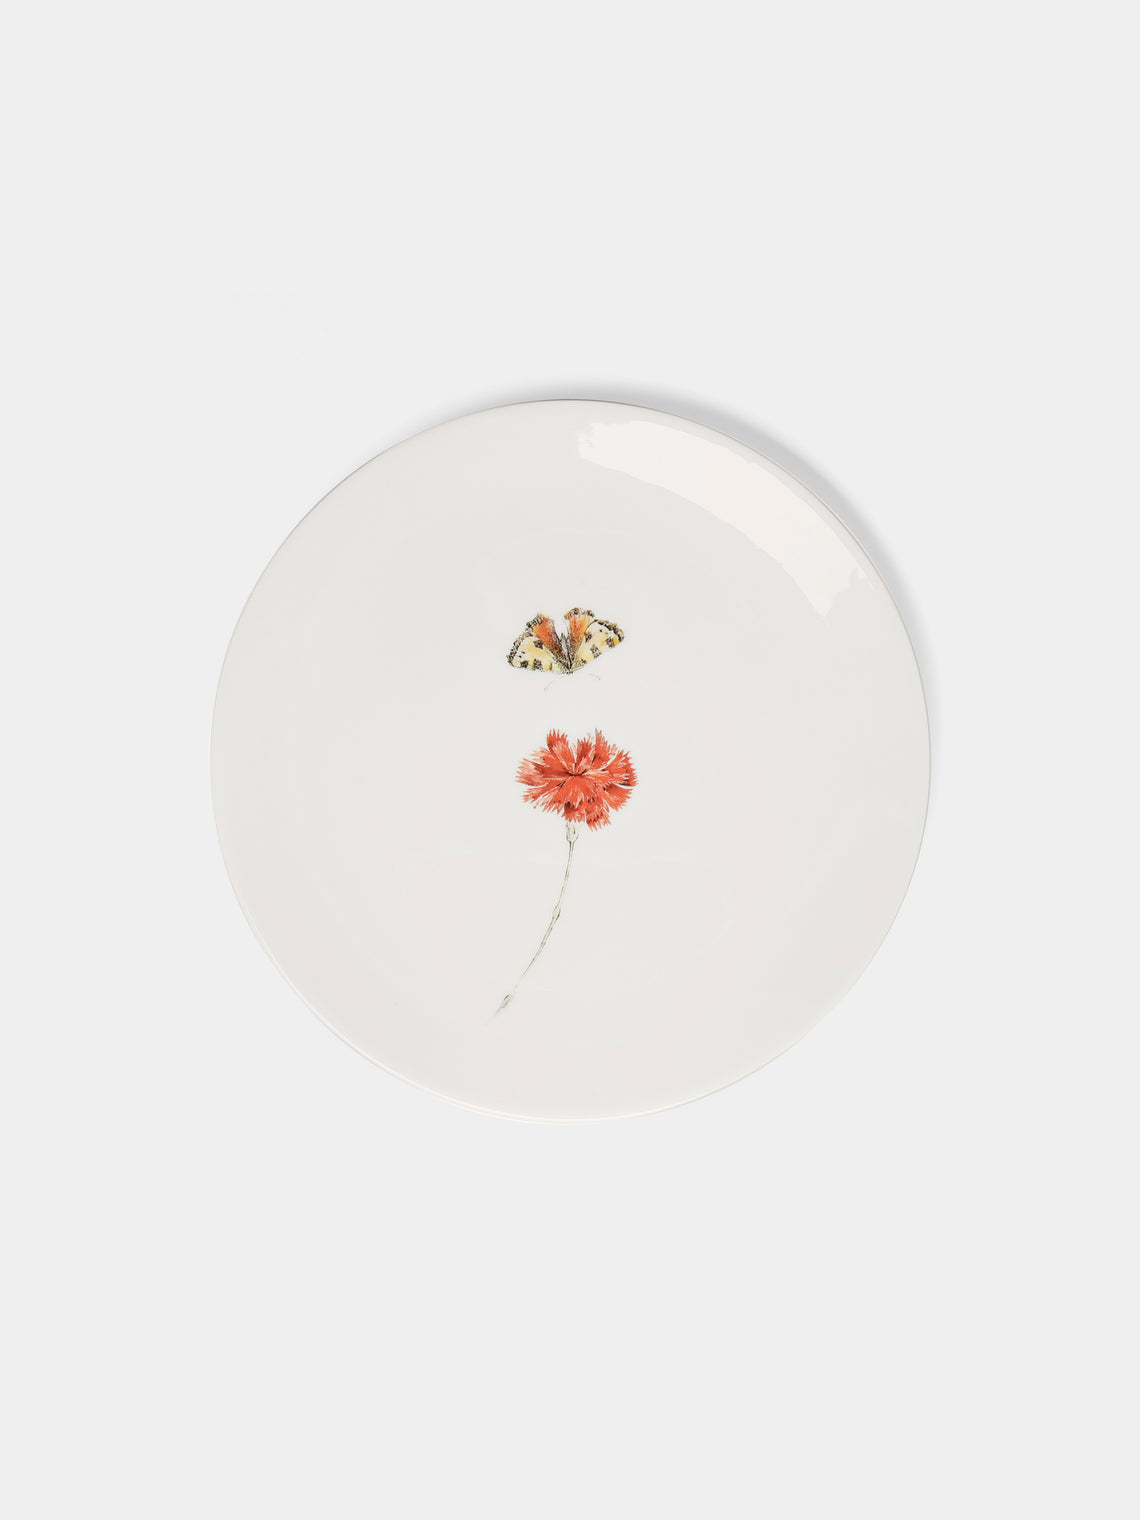 Laboratorio Paravicini - Bloom Ceramic Dessert Plates (Set of 6) - Multiple - ABASK - 